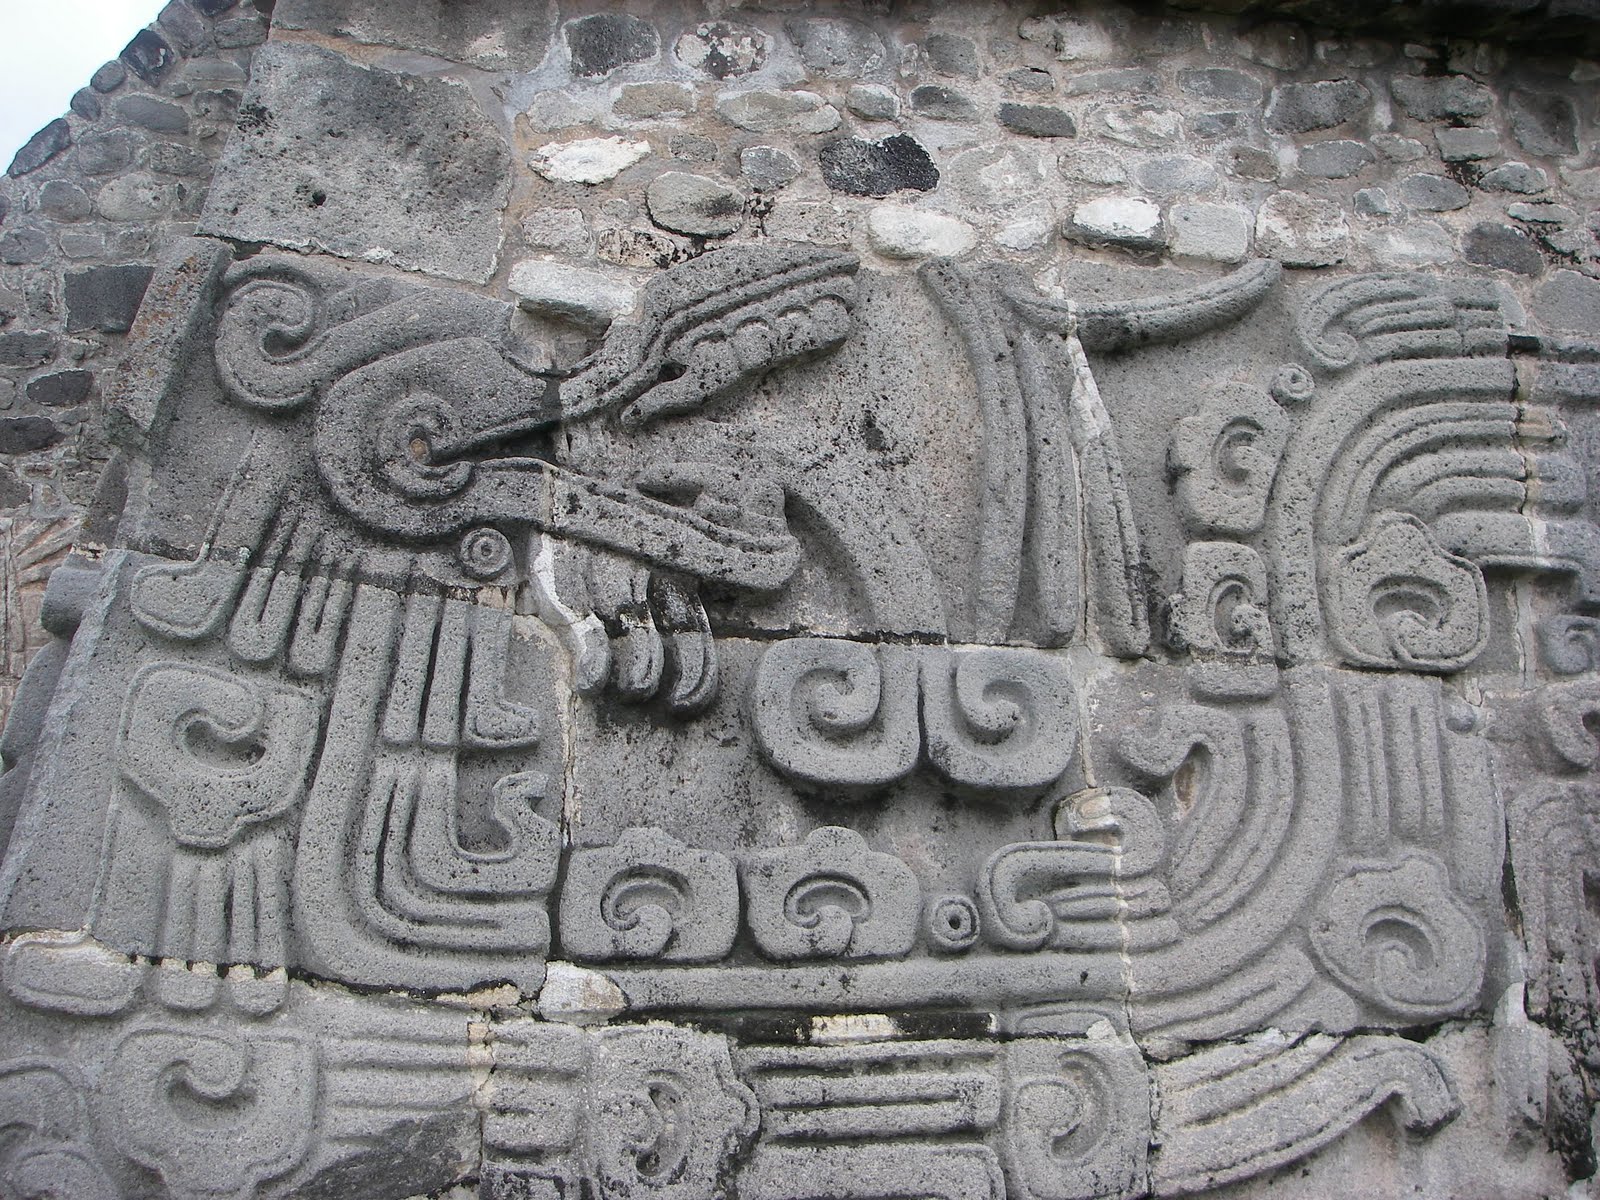 Aztec Culture